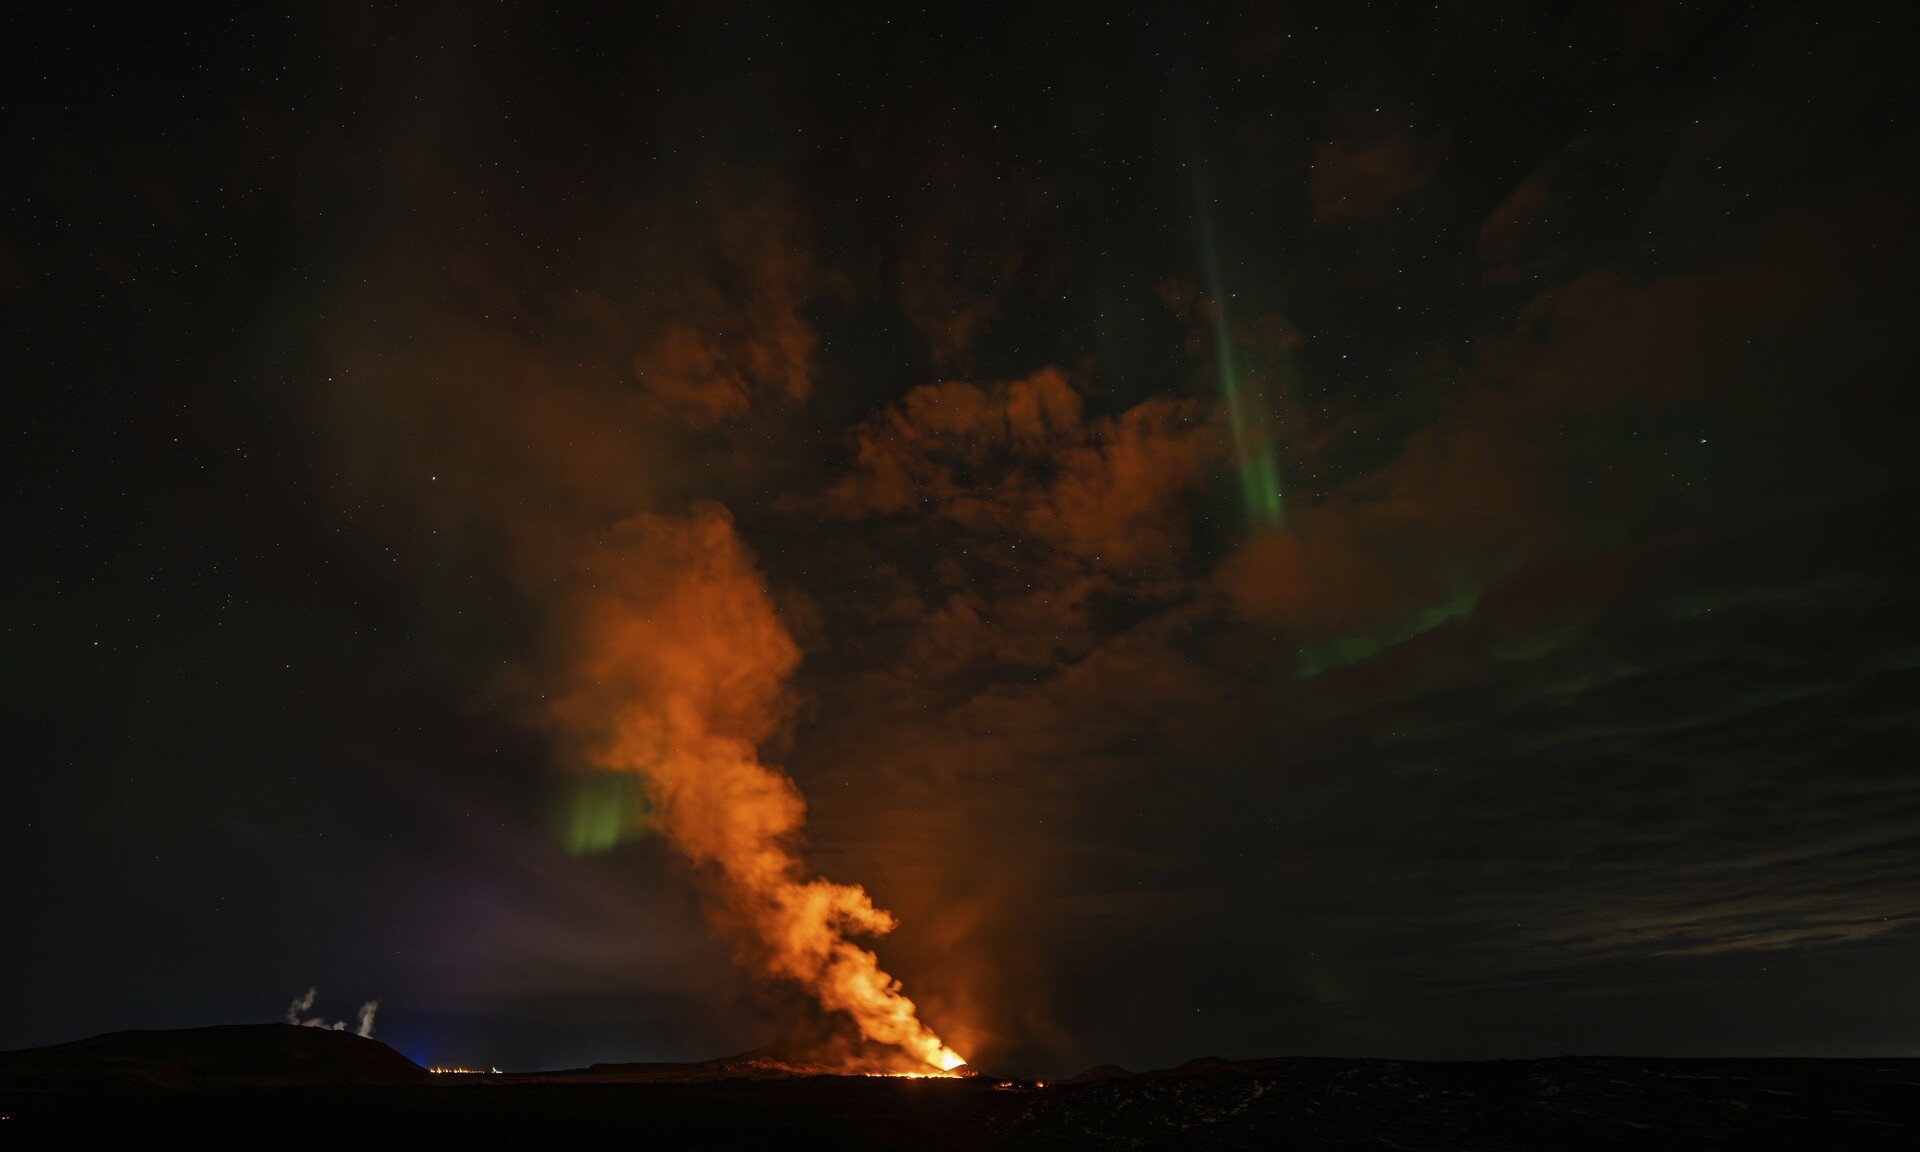 Φαντασμαγορικές εικόνες: Όταν το Βόρειο Σέλας συναντάει ένα ηφαίστειο που εκρήγνυται